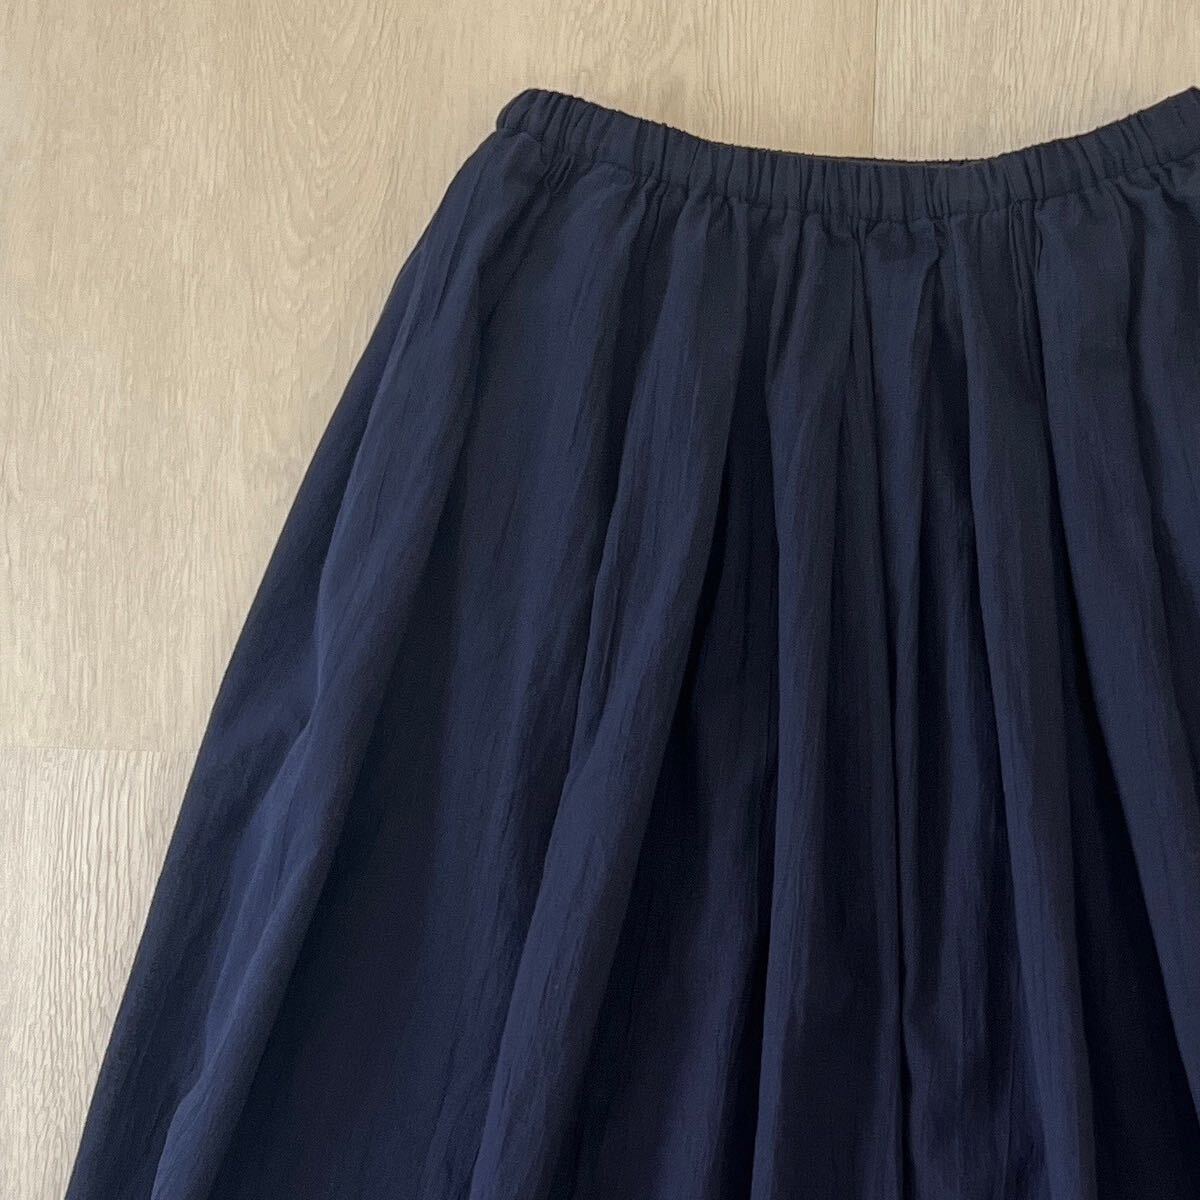  новый бирка MUJI Muji Ryohin Индия хлопок чуть более ..... легкий макси длина юбка длинная юбка талия резина pechi пальто имеется натуральный 